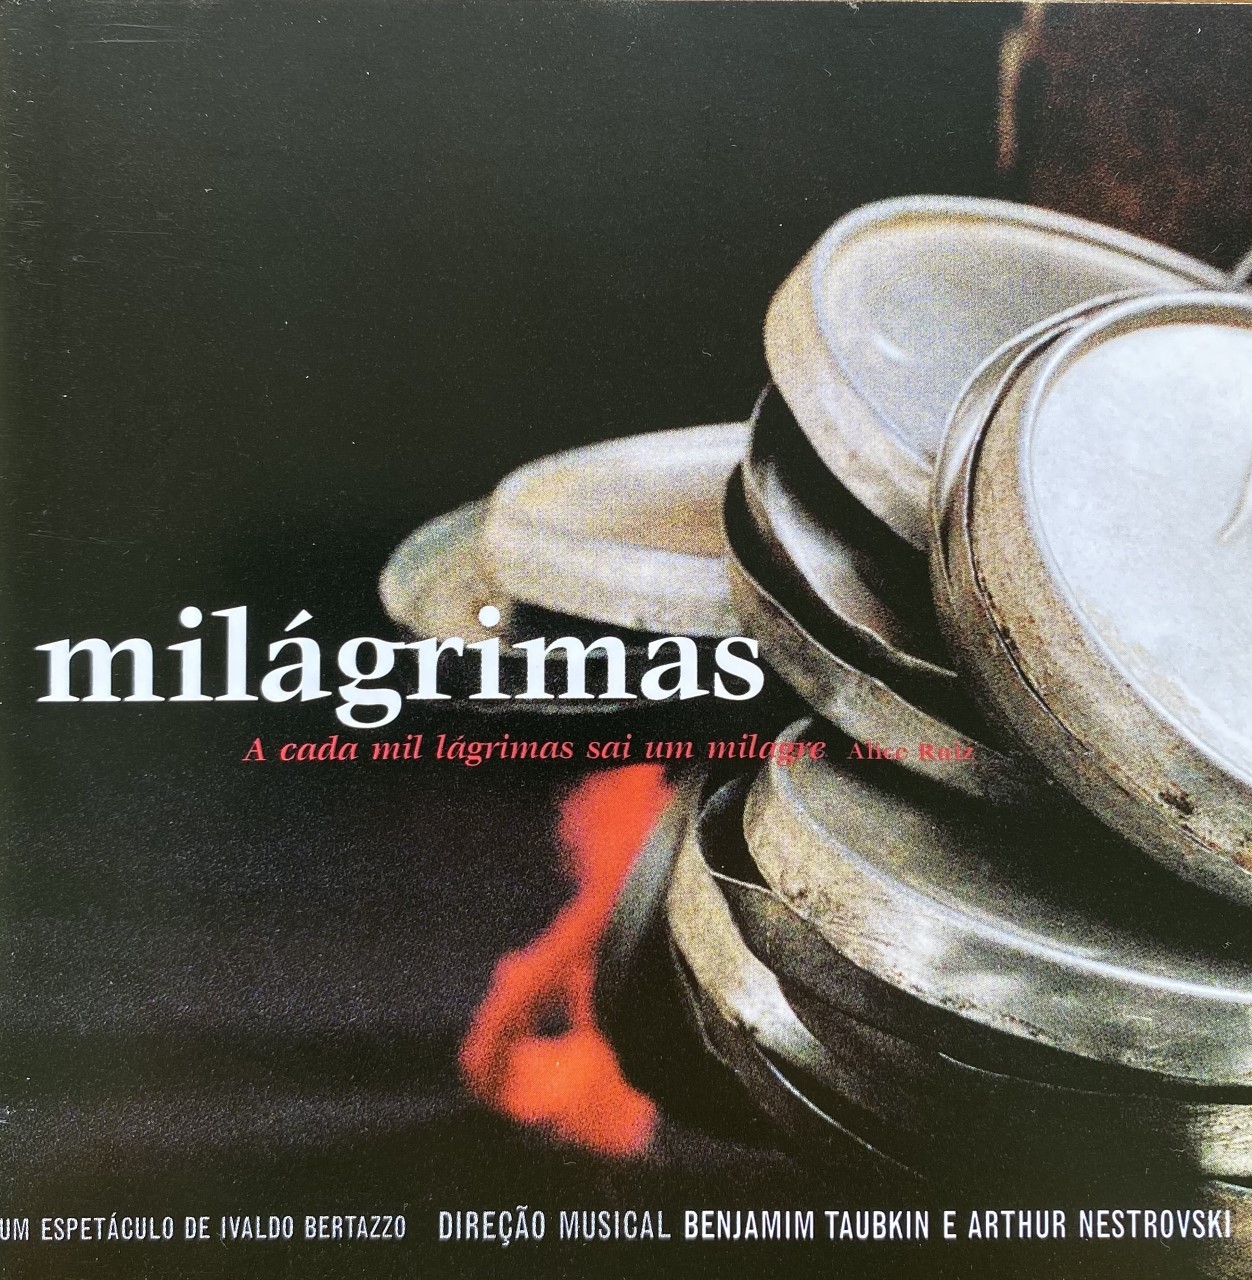 capa do album Milágrimas